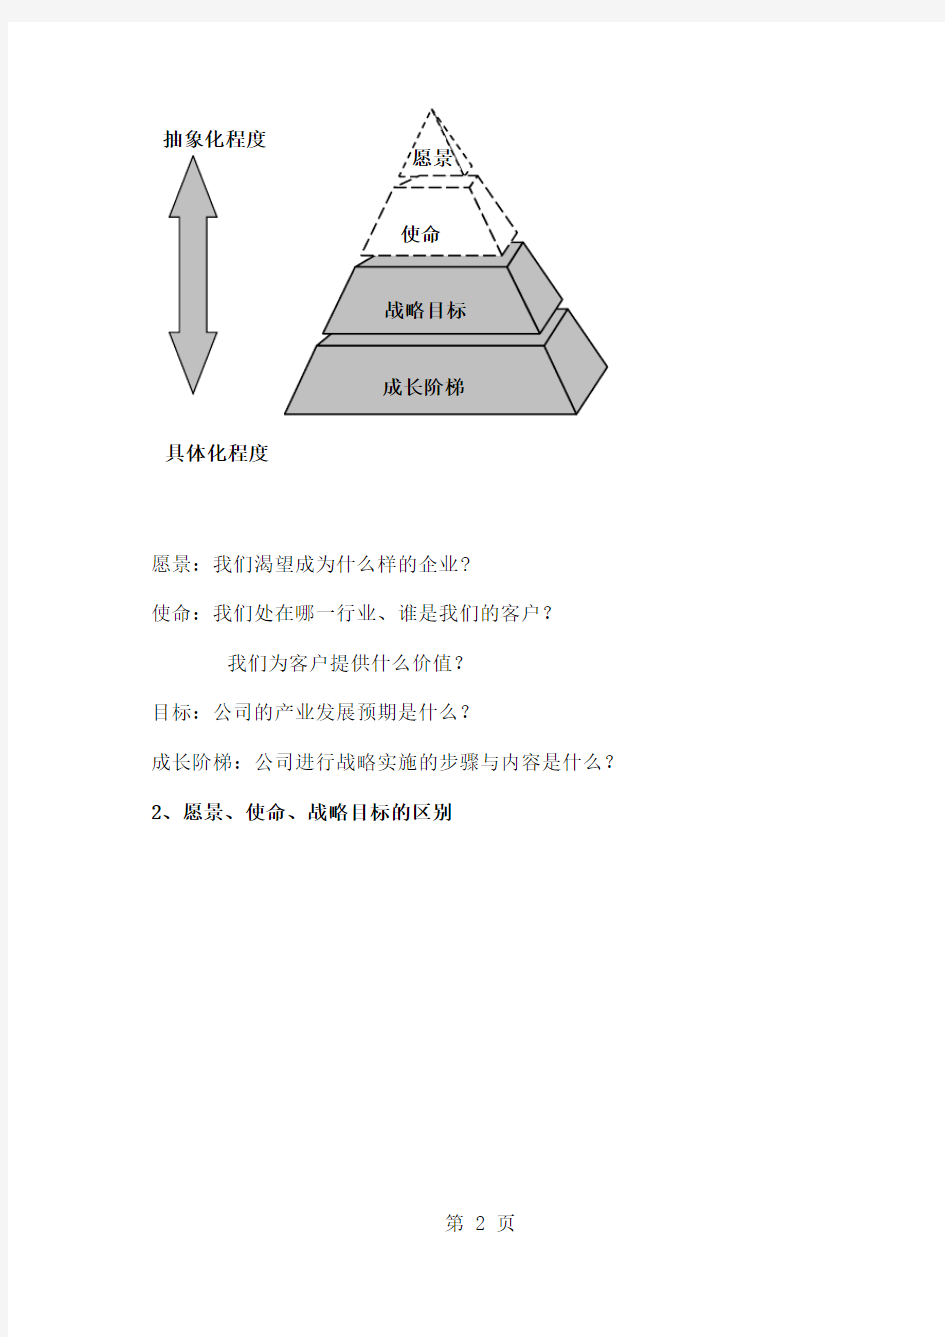 宏达公司发展战略规划纲要共21页